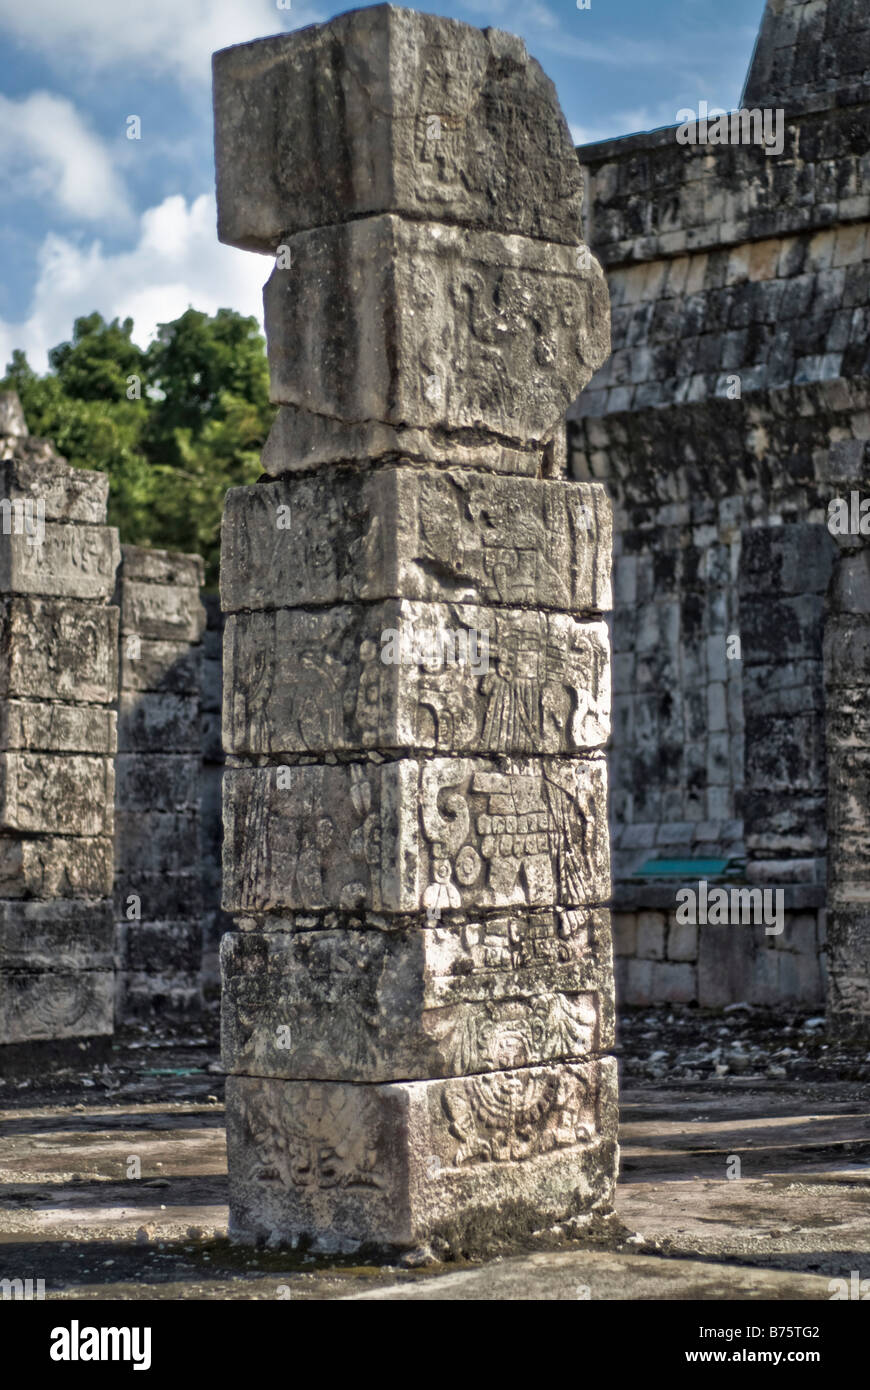 CHICHEN ITZA, Mexique - Templo de los Guerreros (Temple des guerriers) aux ruines mayas anciennes de Chichen Itza, Yucatan, Mexique. Chichen Itza, situé sur la péninsule du Yucatan au Mexique, est un site archéologique important présentant la riche histoire et les connaissances scientifiques avancées de la civilisation maya antique. Il est plus connu pour la Pyramide Kukulkan, ou « El Castillo », une structure à quatre côtés avec 91 marches de chaque côté, culminant en une seule étape au sommet pour représenter les 365 jours de l'année solaire. Banque D'Images